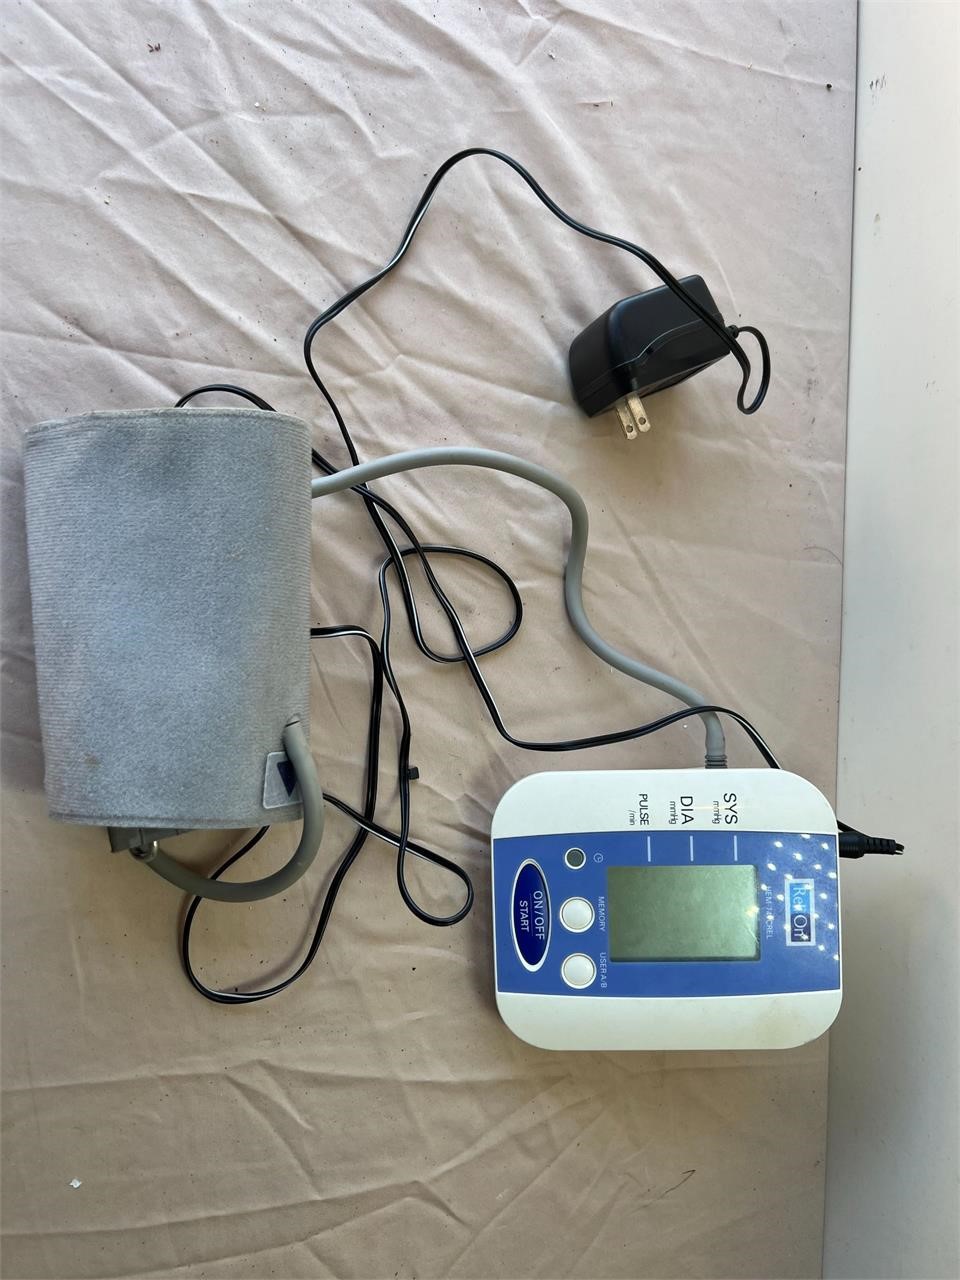 Blood Pressure Machine and Cuff